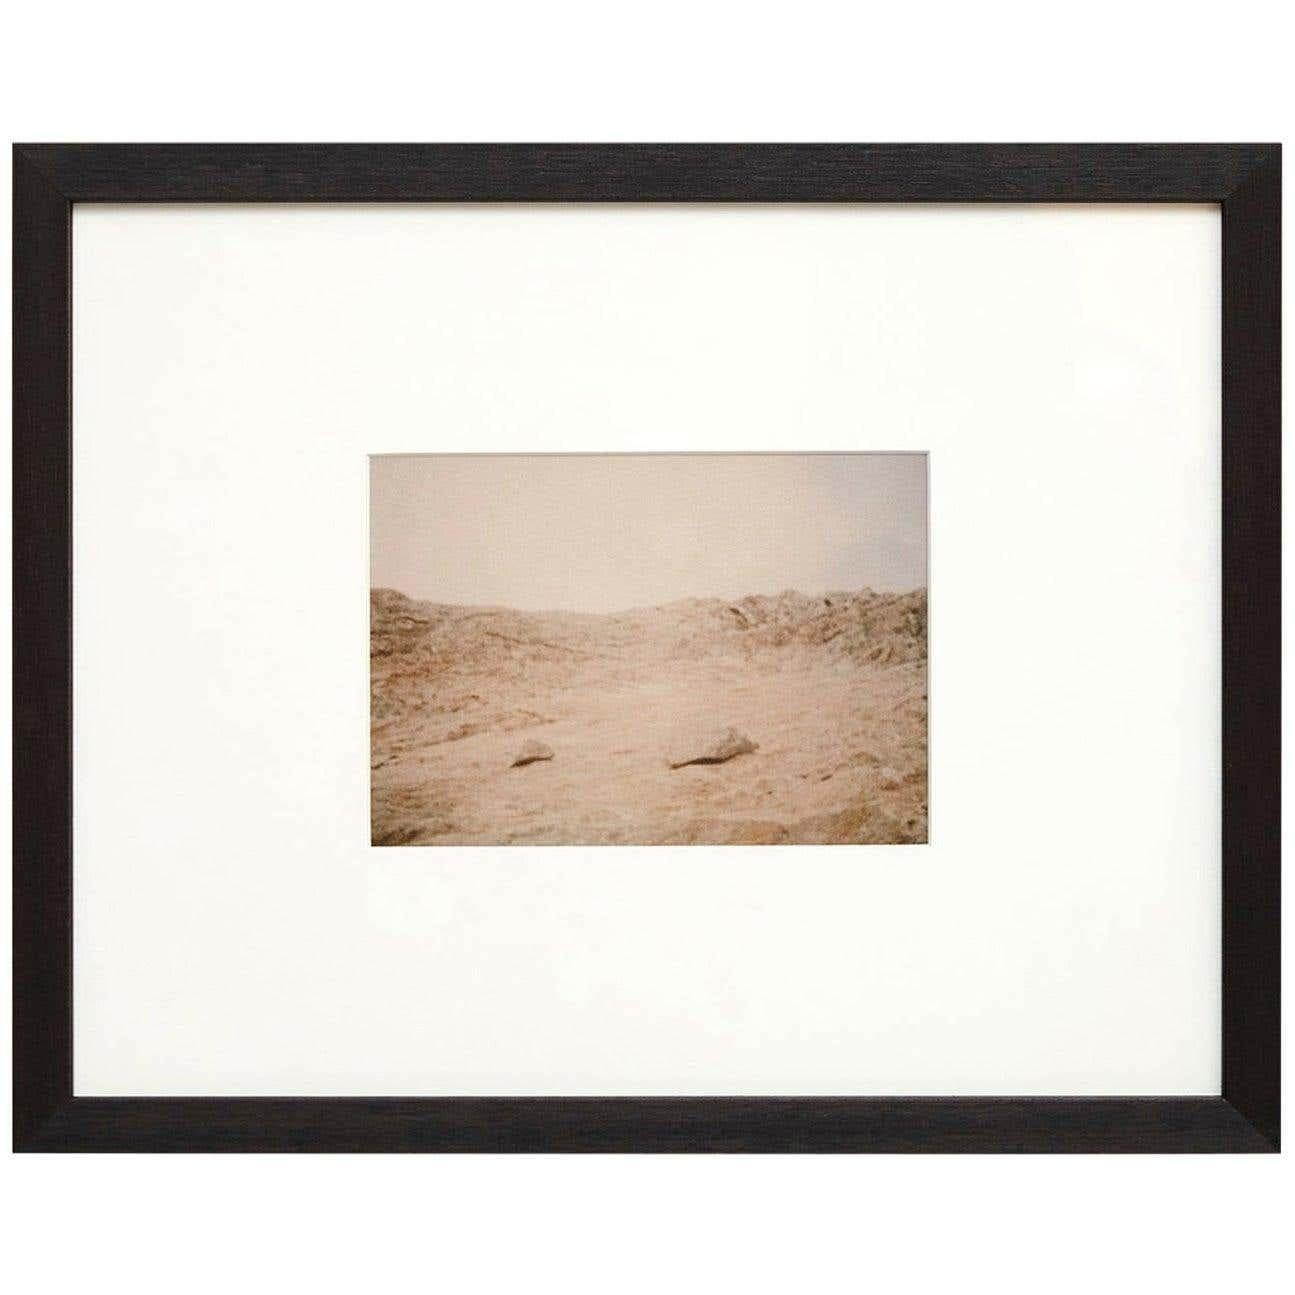 „Desert-Landschaft“ von David Urbano – Rewind or Forward Serie, N01